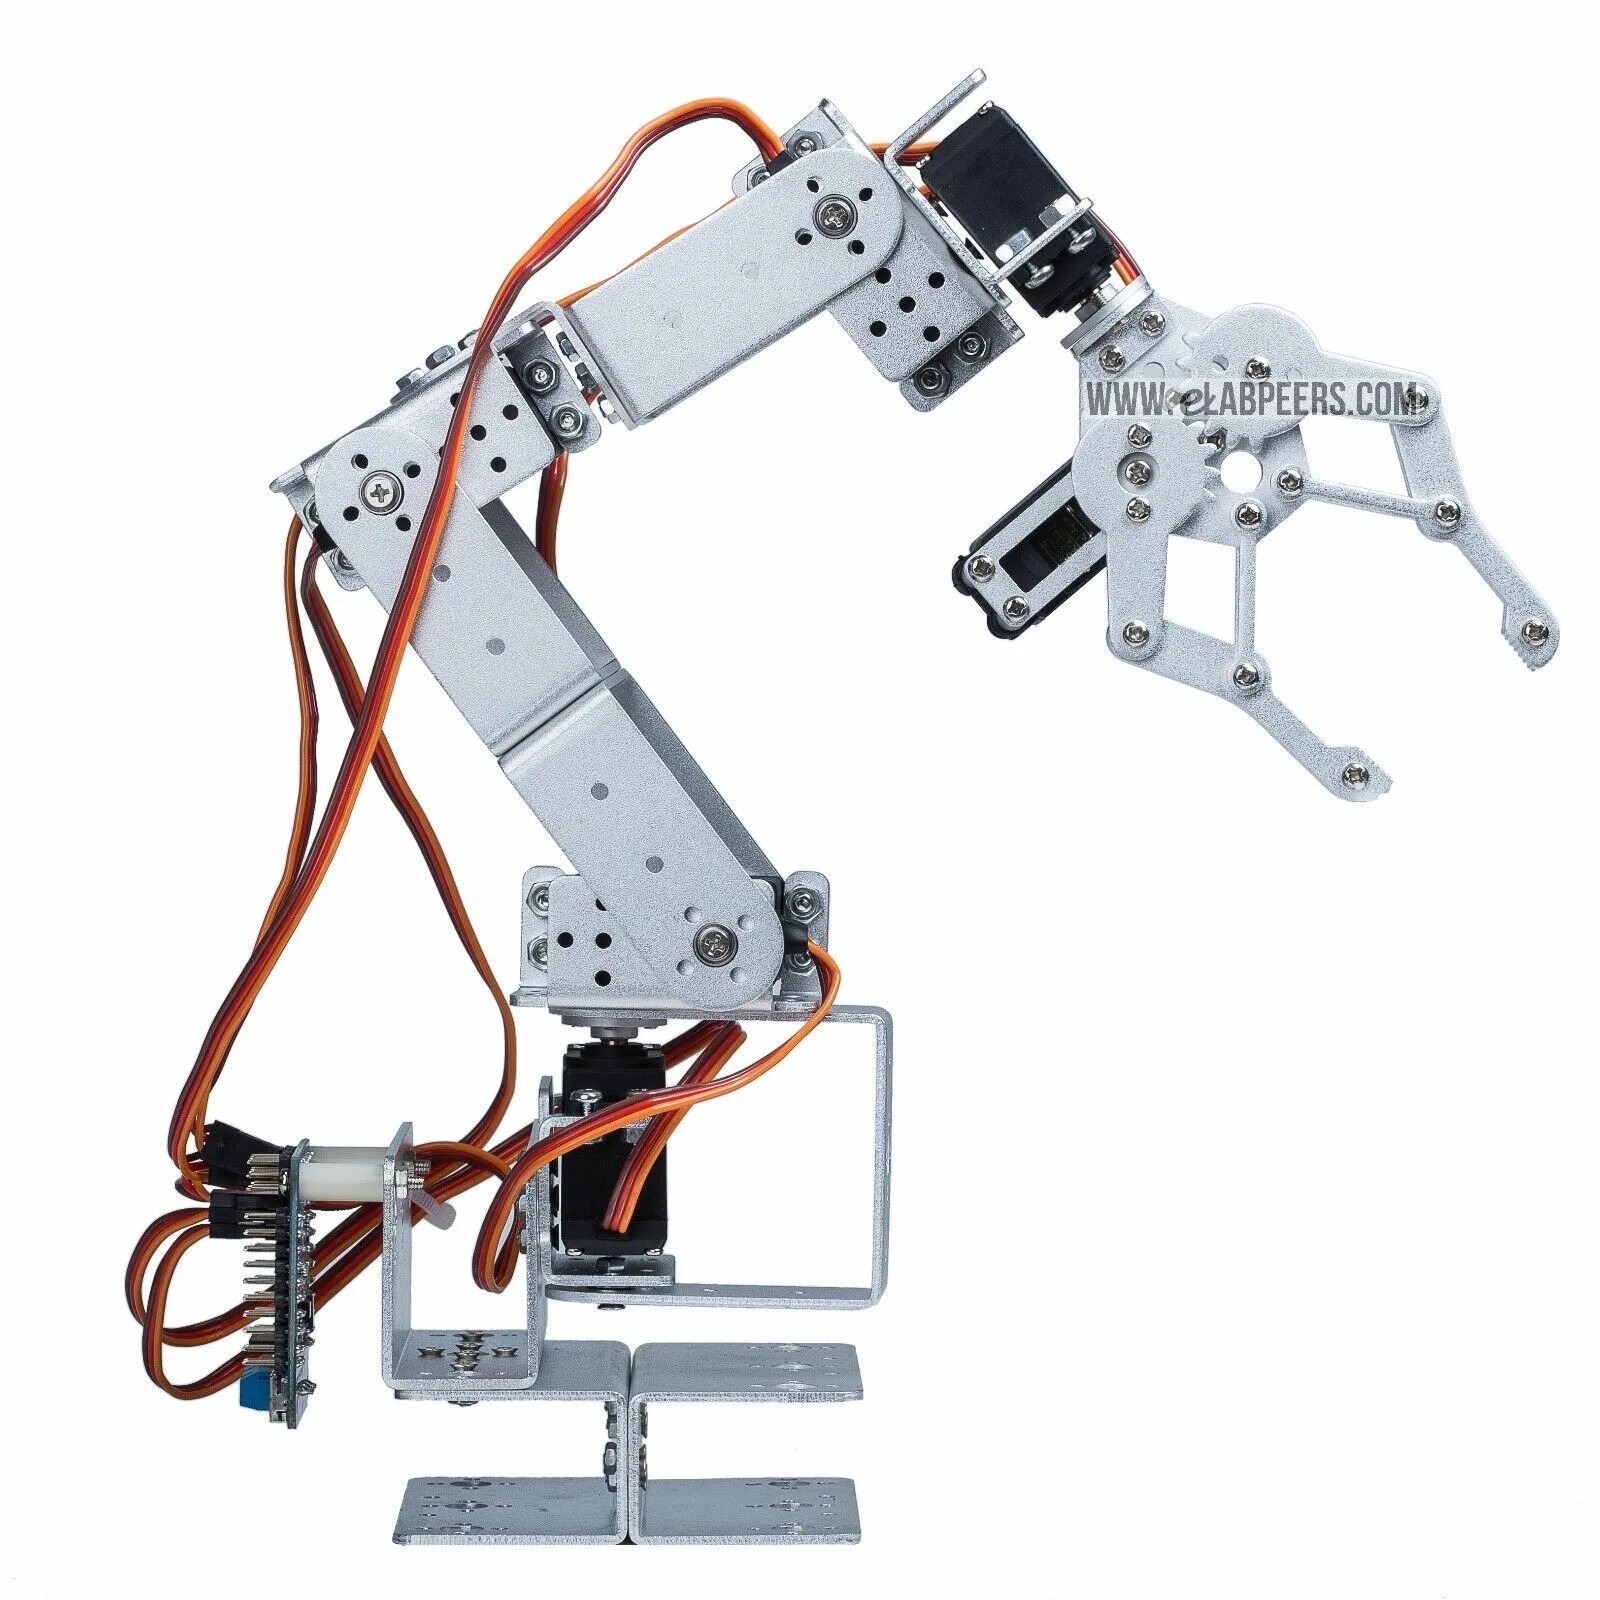 Роборука купить. Робот 6dof Arduino. Робот манипулятор на сервоприводах mg996r 3d модель. Робот манипулятор mg996r ds3115. Робот-манипулятор LD-tg1400-6.